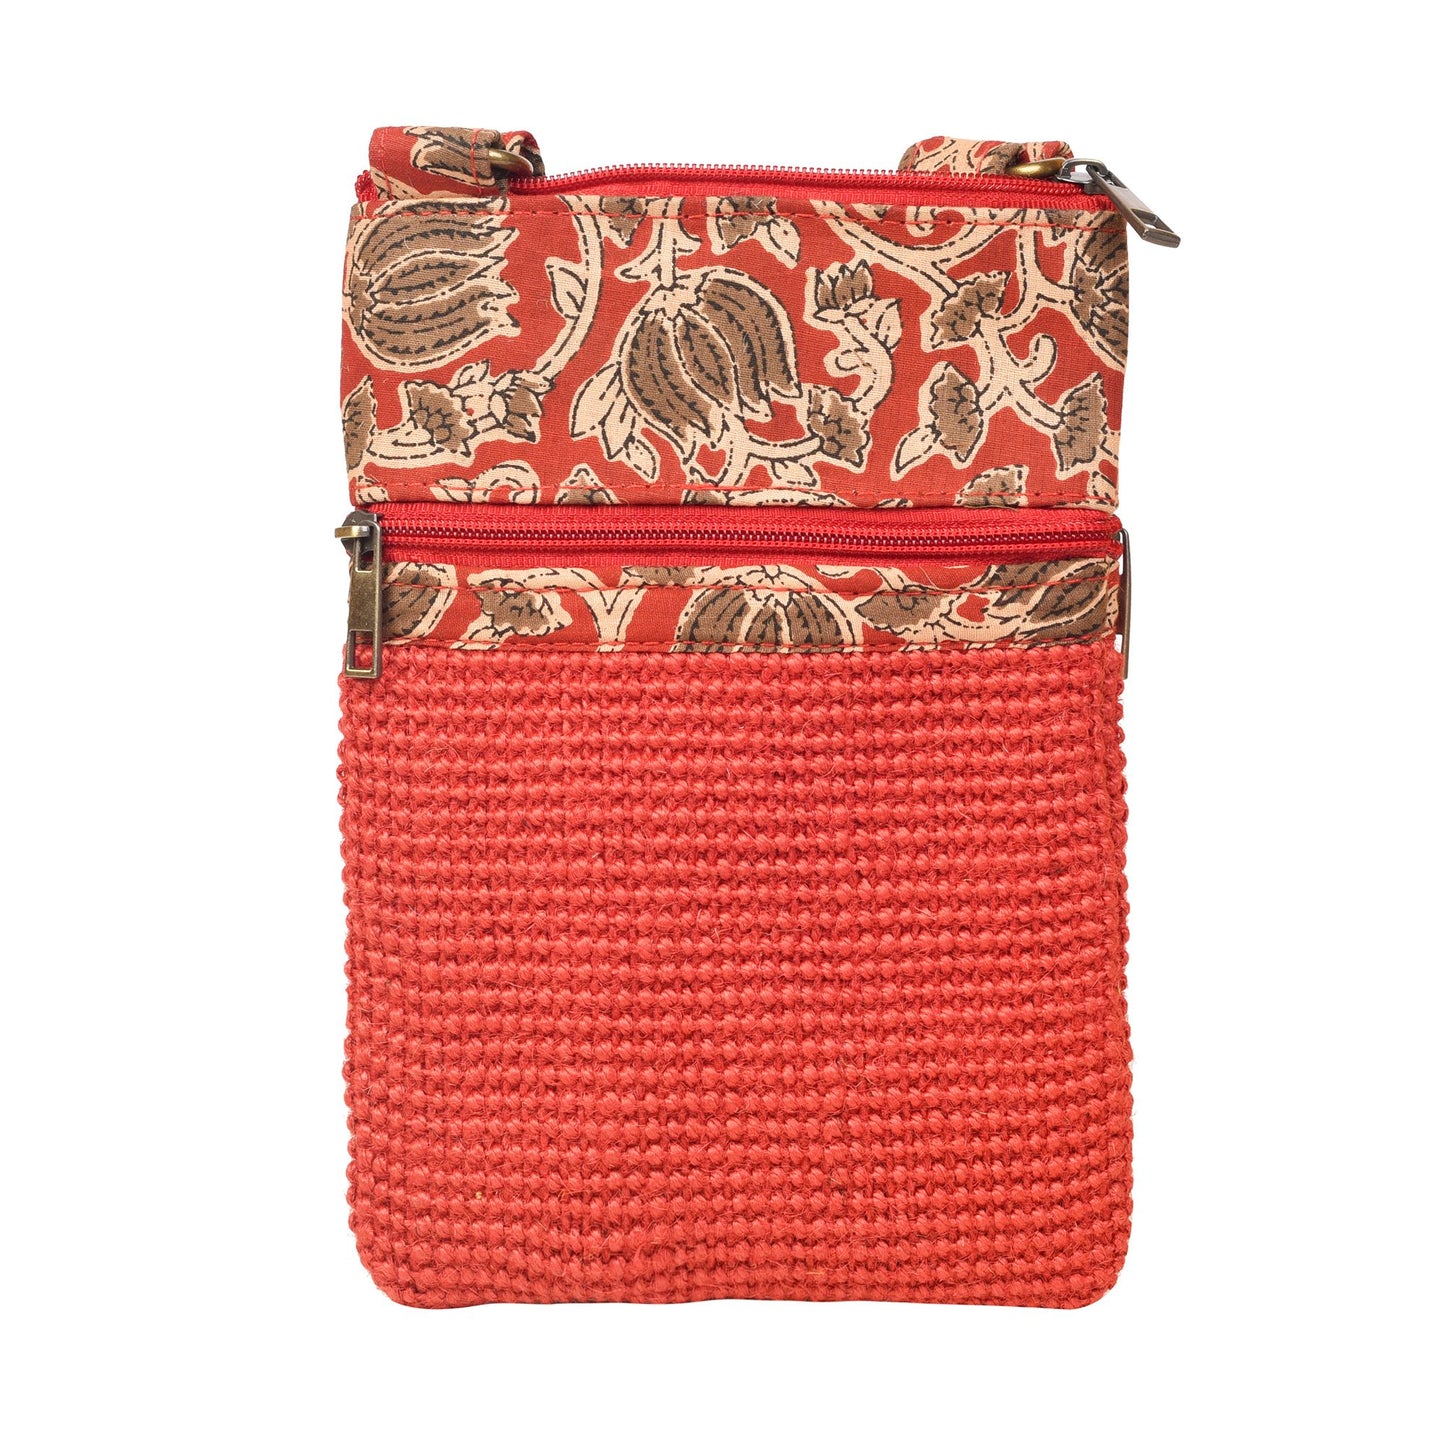 Kalamkari Red Sling Bag in Structered Jute Fabric